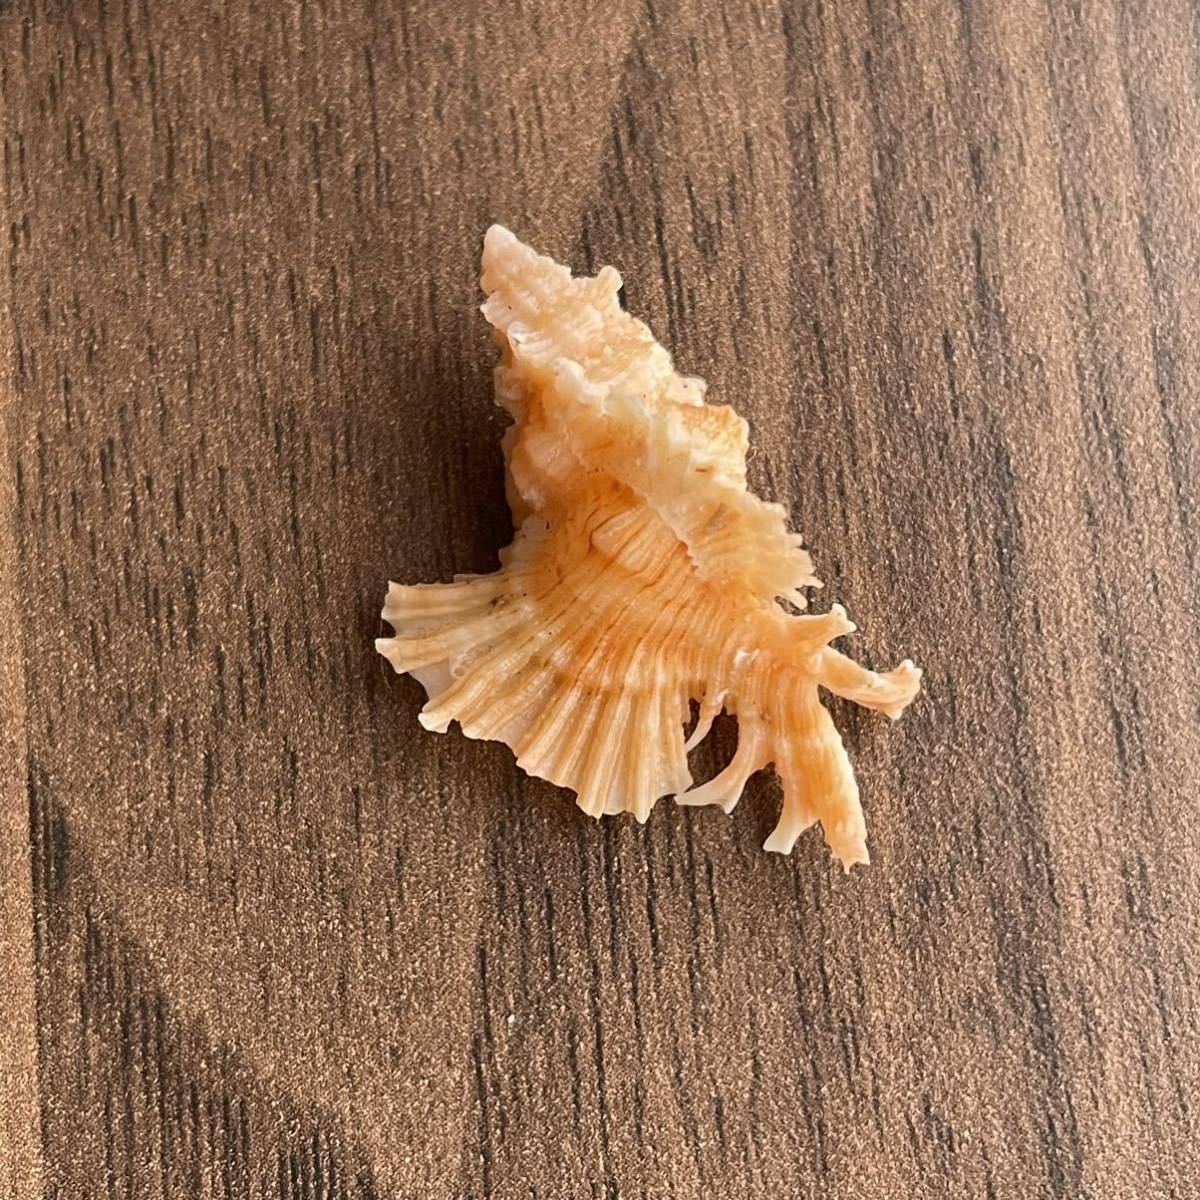 カトレアバショウ　貝殻　貝　シェル　貝殻標本　標本　アッキガイ科　かいがら　美しい造形　天然　コレクション　海　shell 巻貝_画像2